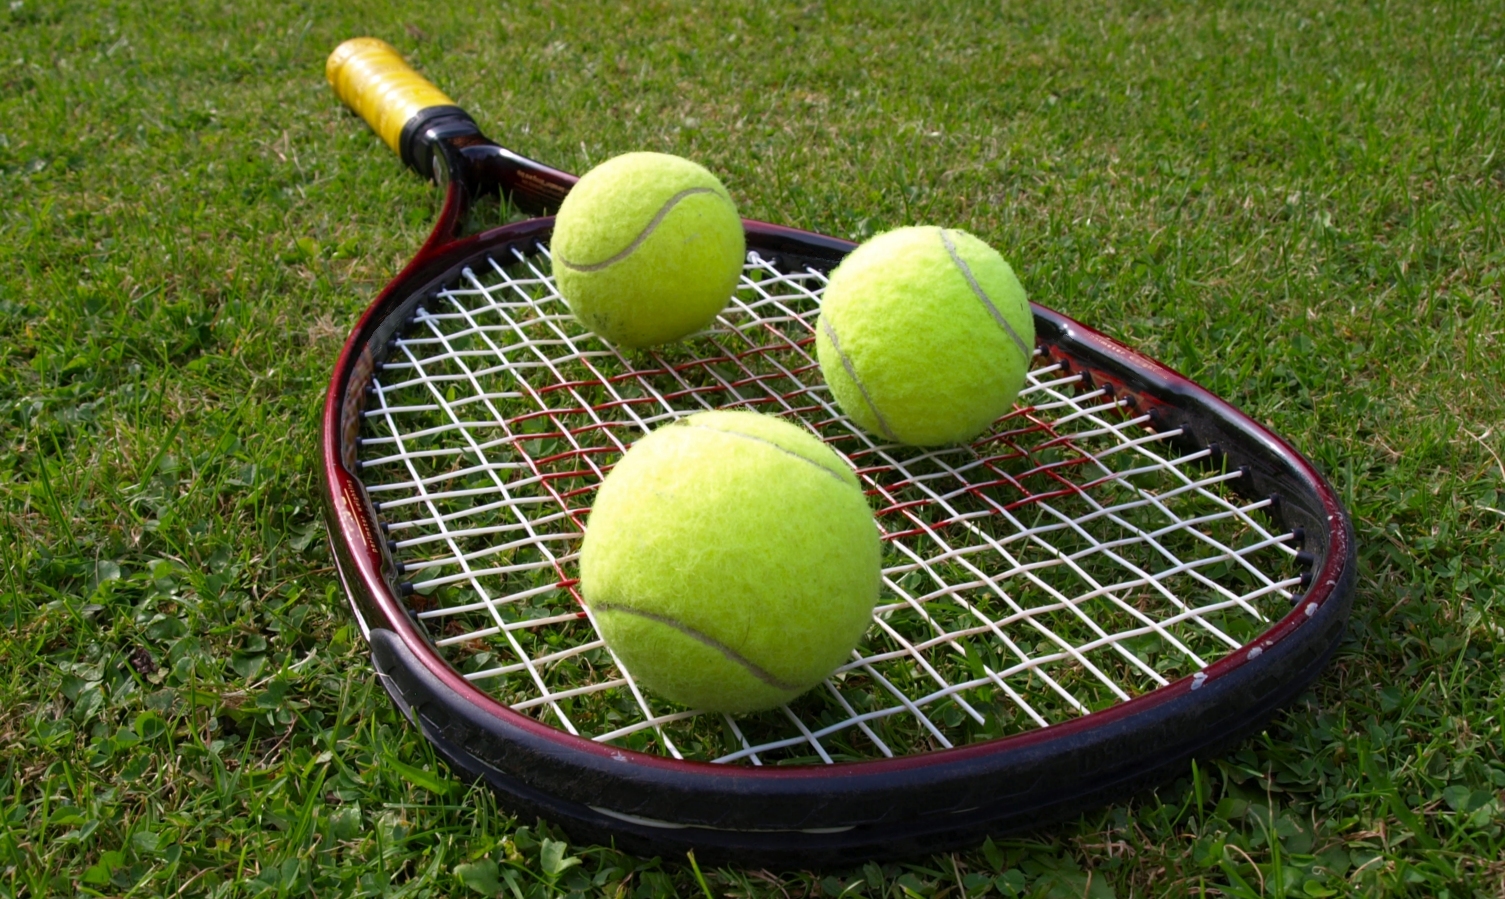 В теннисной спортивной. Теннис. Ракетка для большого тенниса и мячик. Теннисная ракетка и мяч. Теннисный корт с мячом и ракеткой.